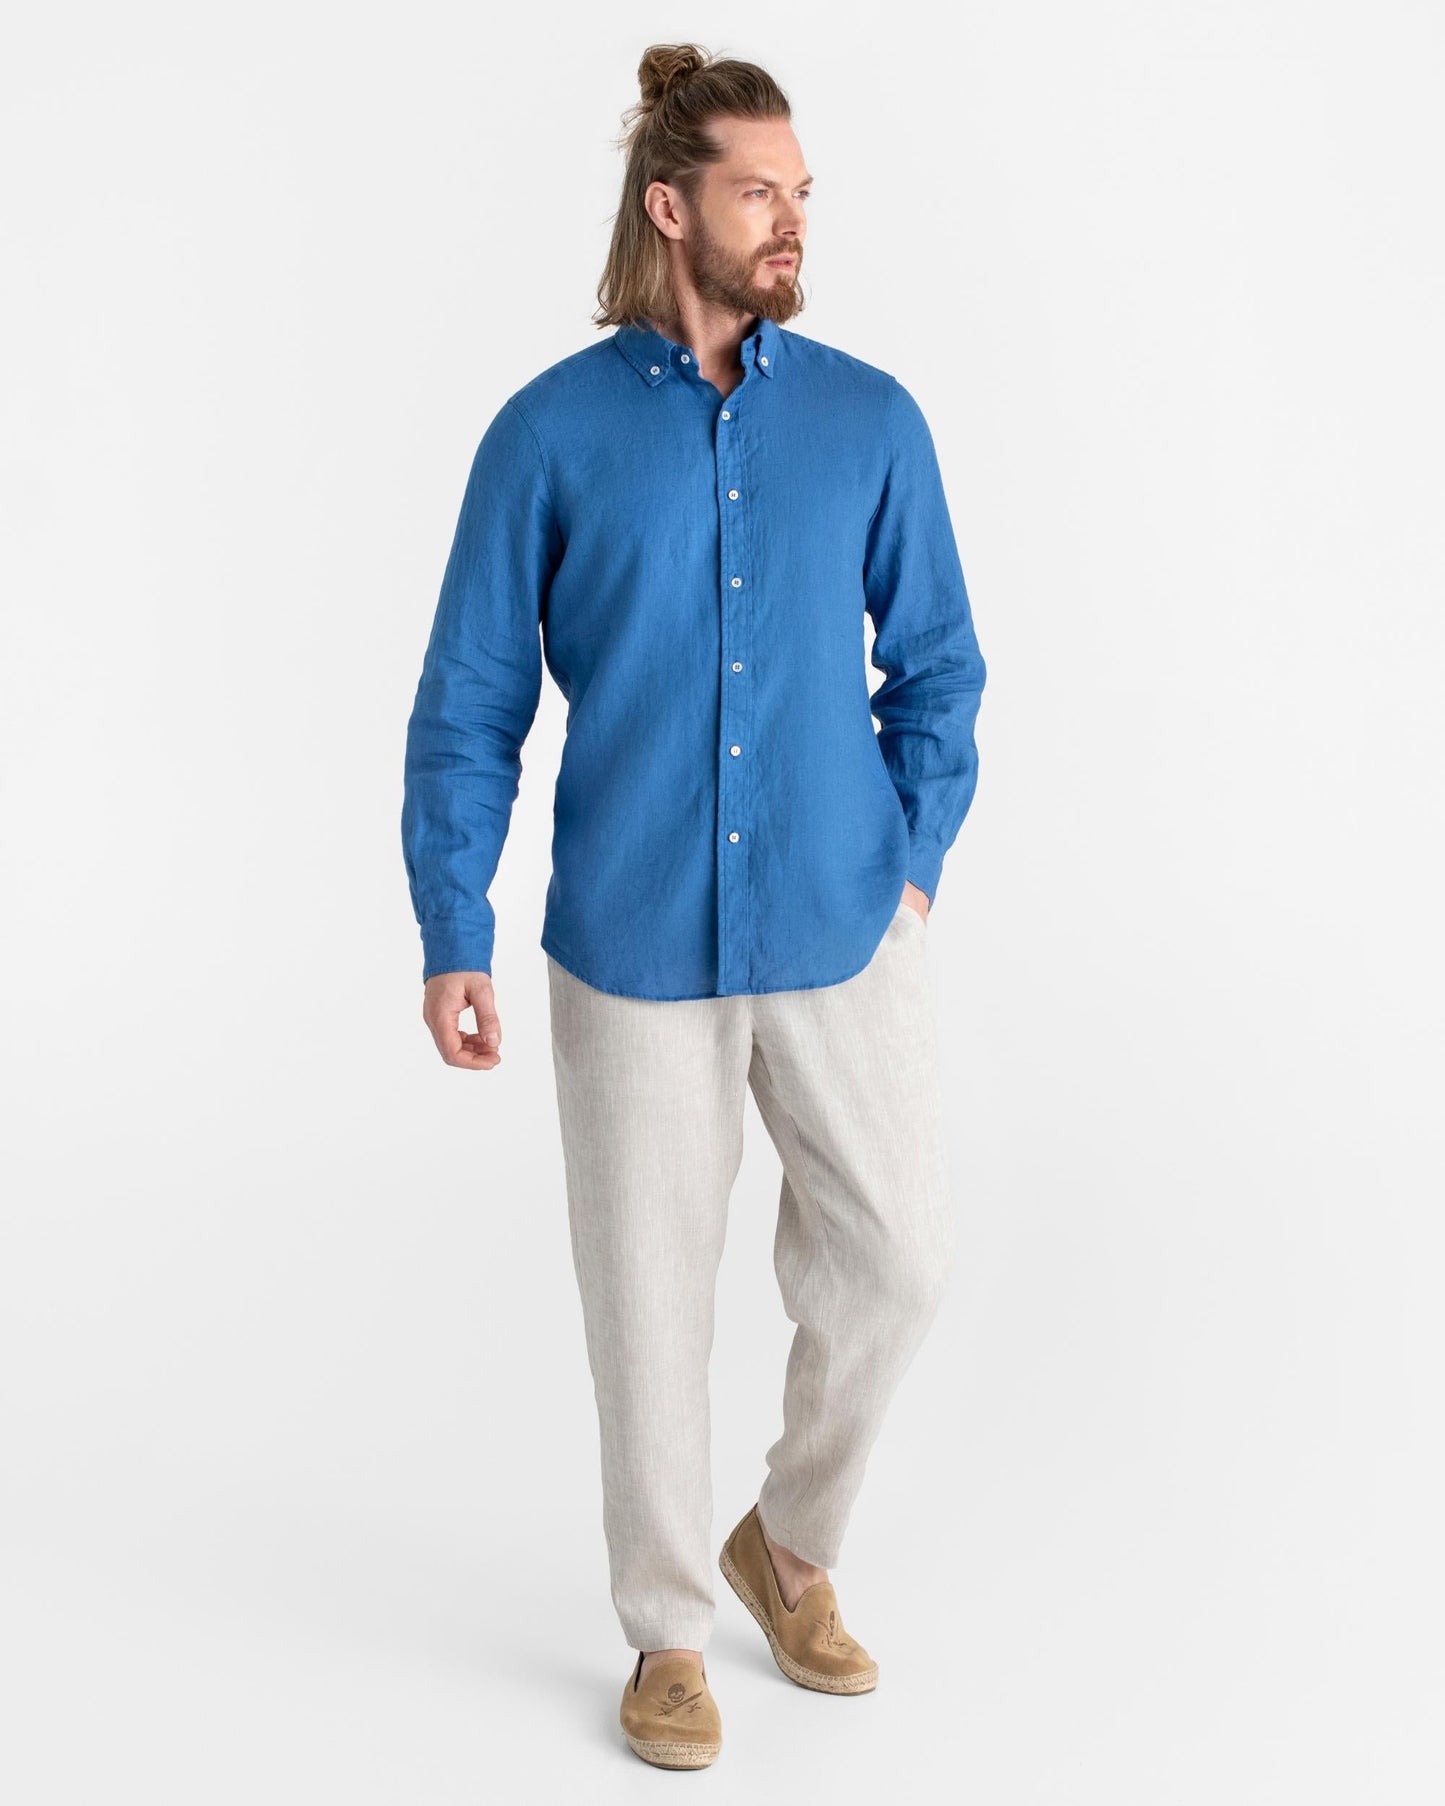 Classic men's linen shirt SINTRA in Cobalt blue - MagicLinen modelBoxOn